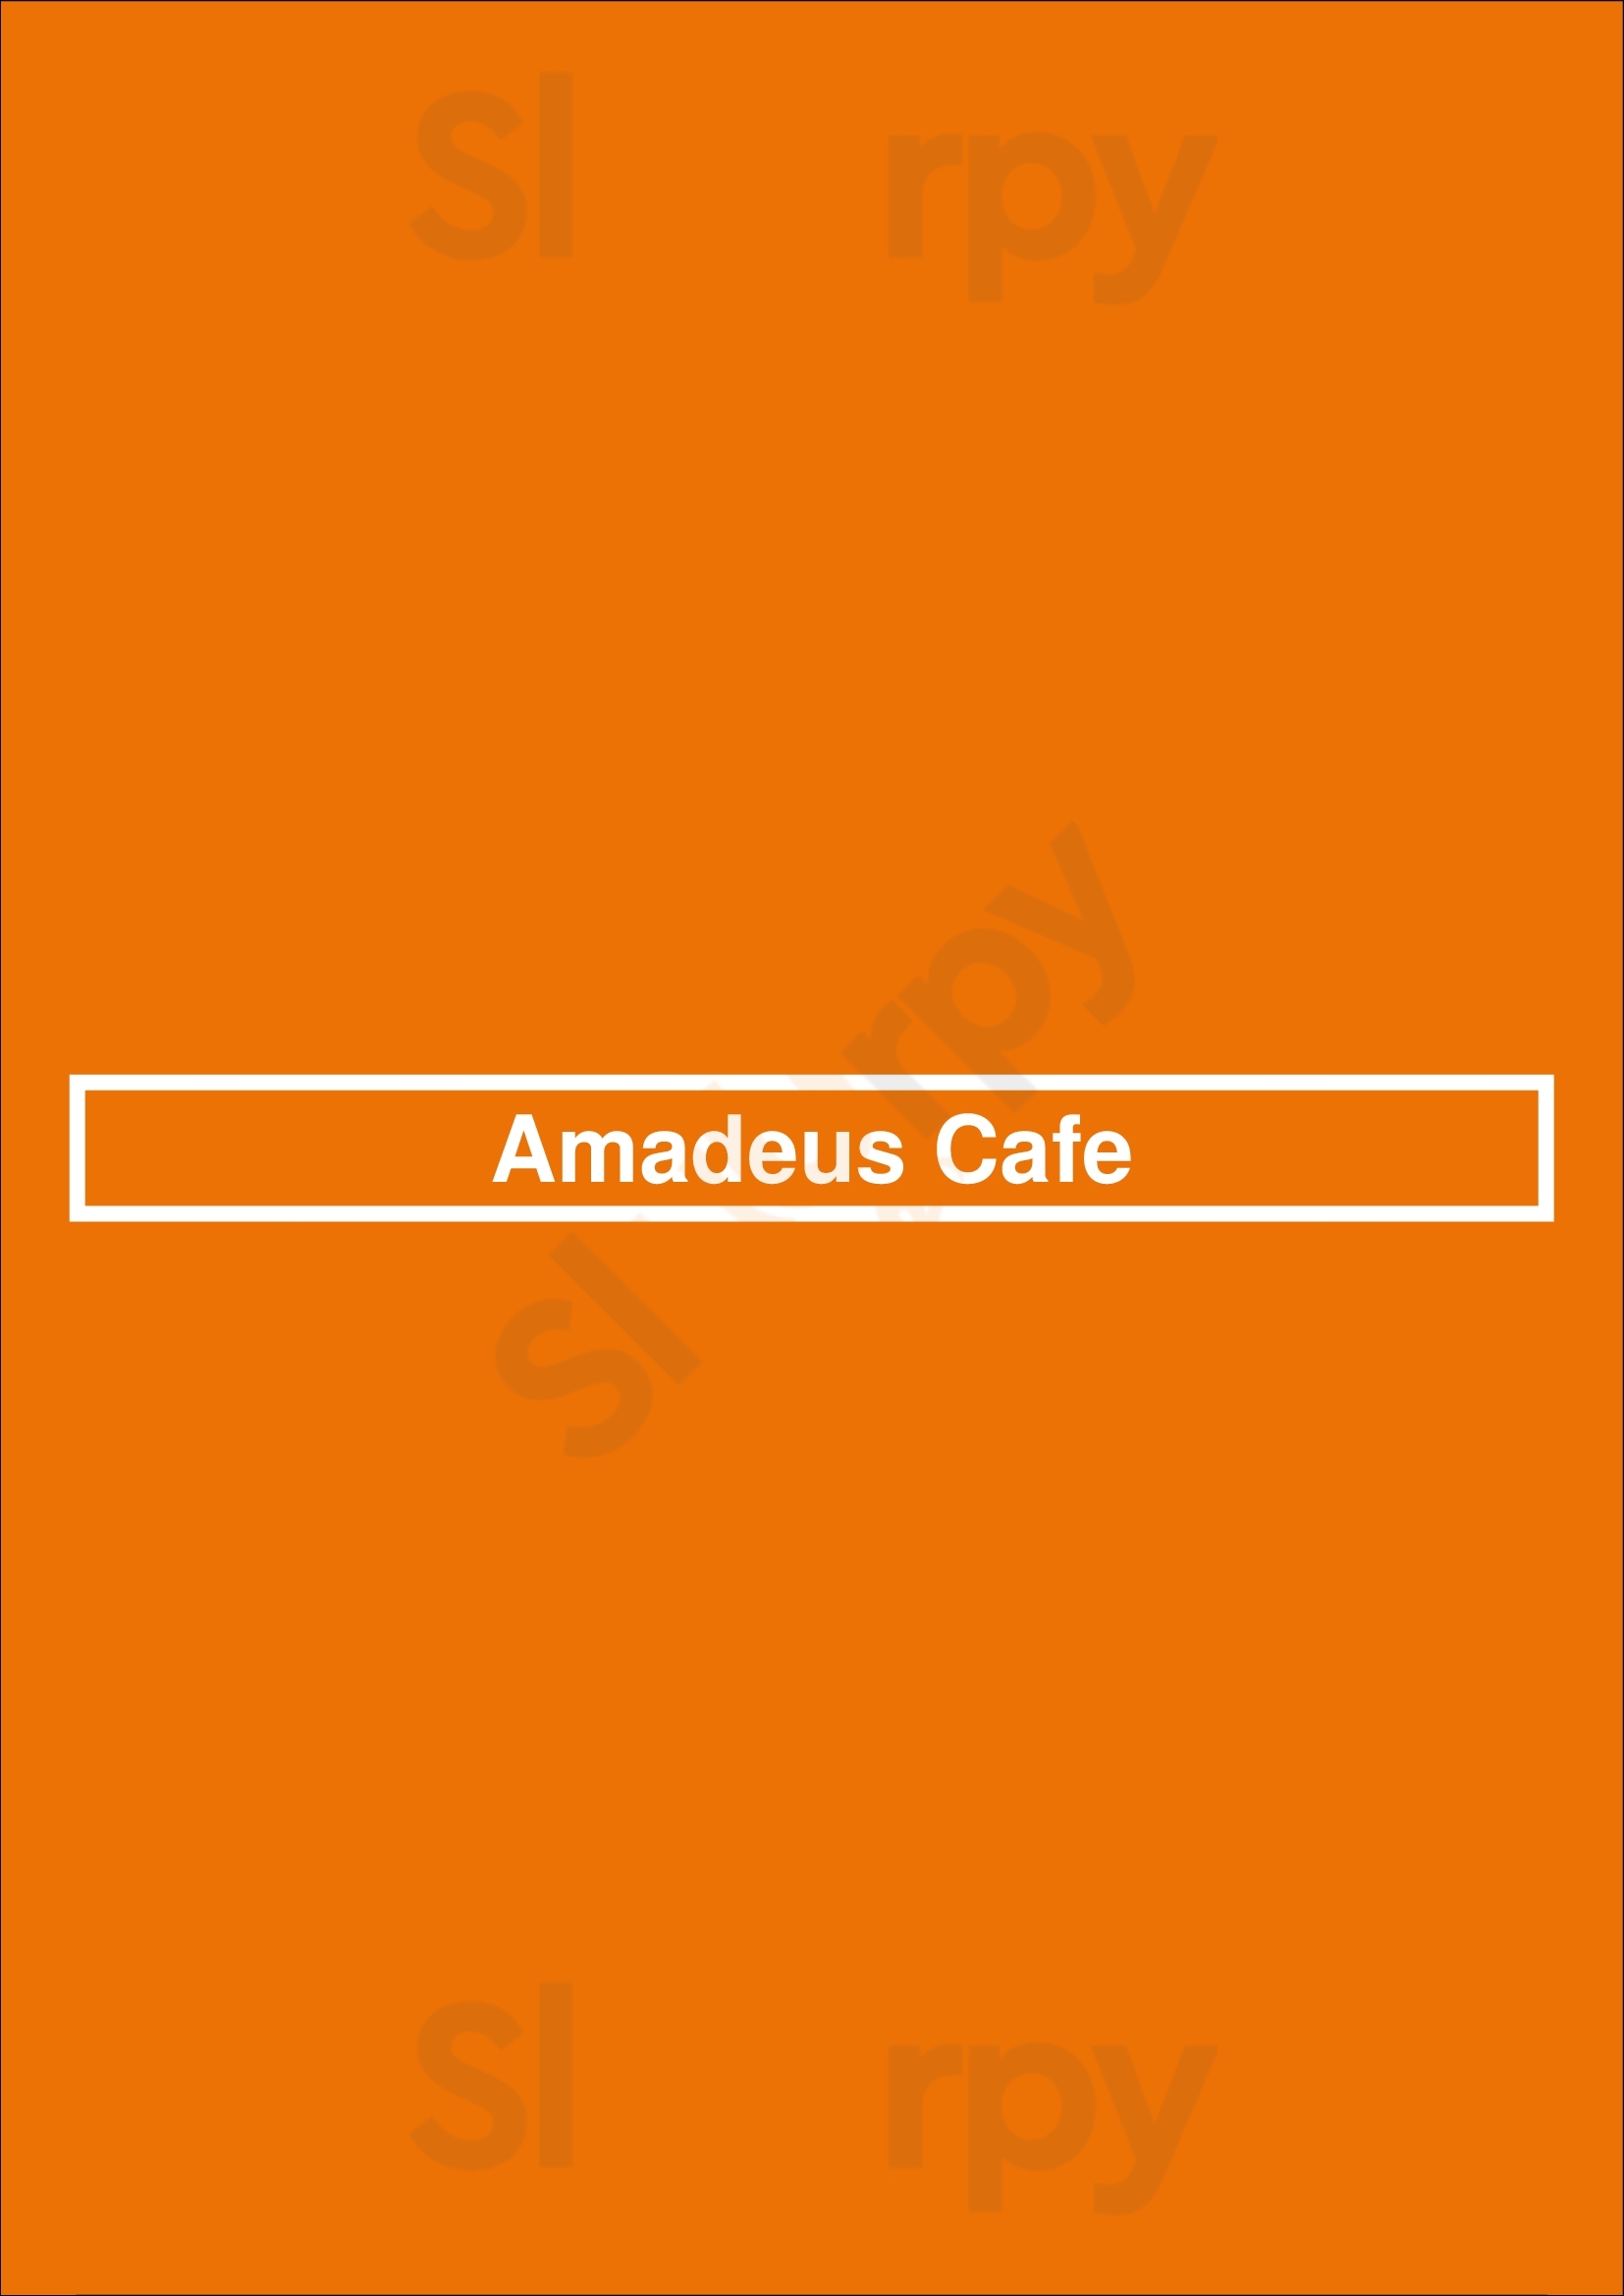 Amadeus Cafe Salem Menu - 1